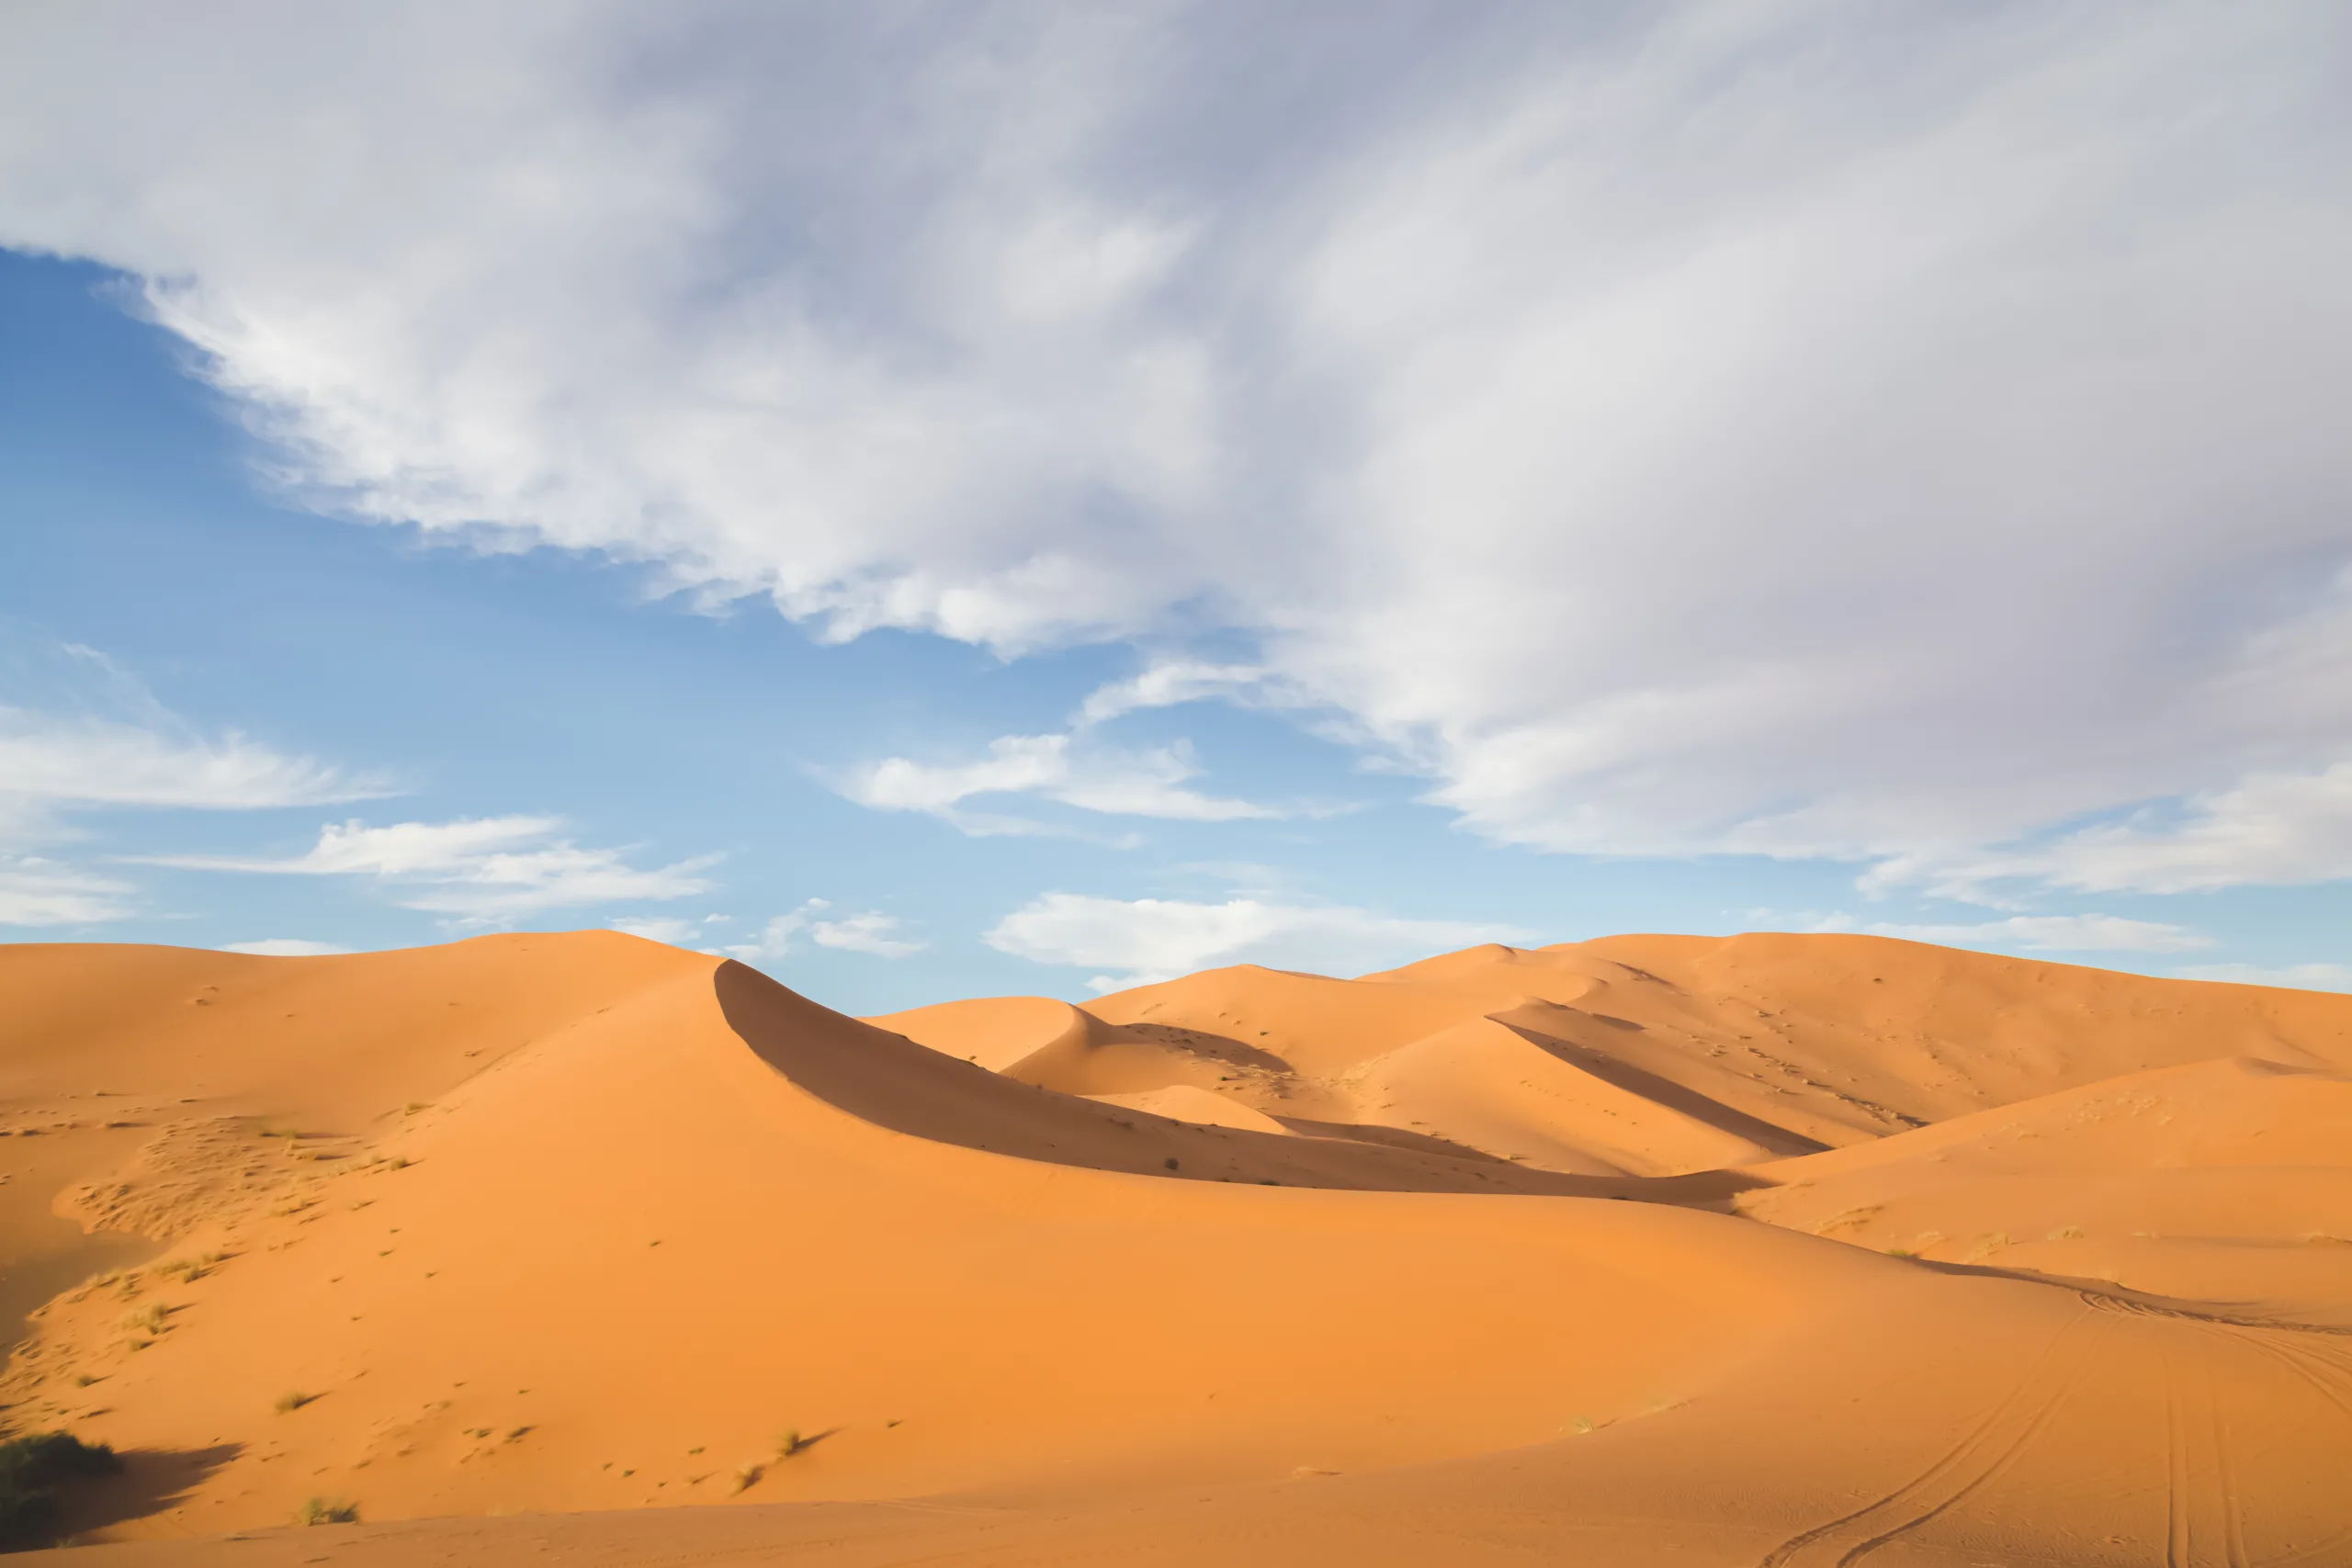 Sand dunes in the Merzouga desert